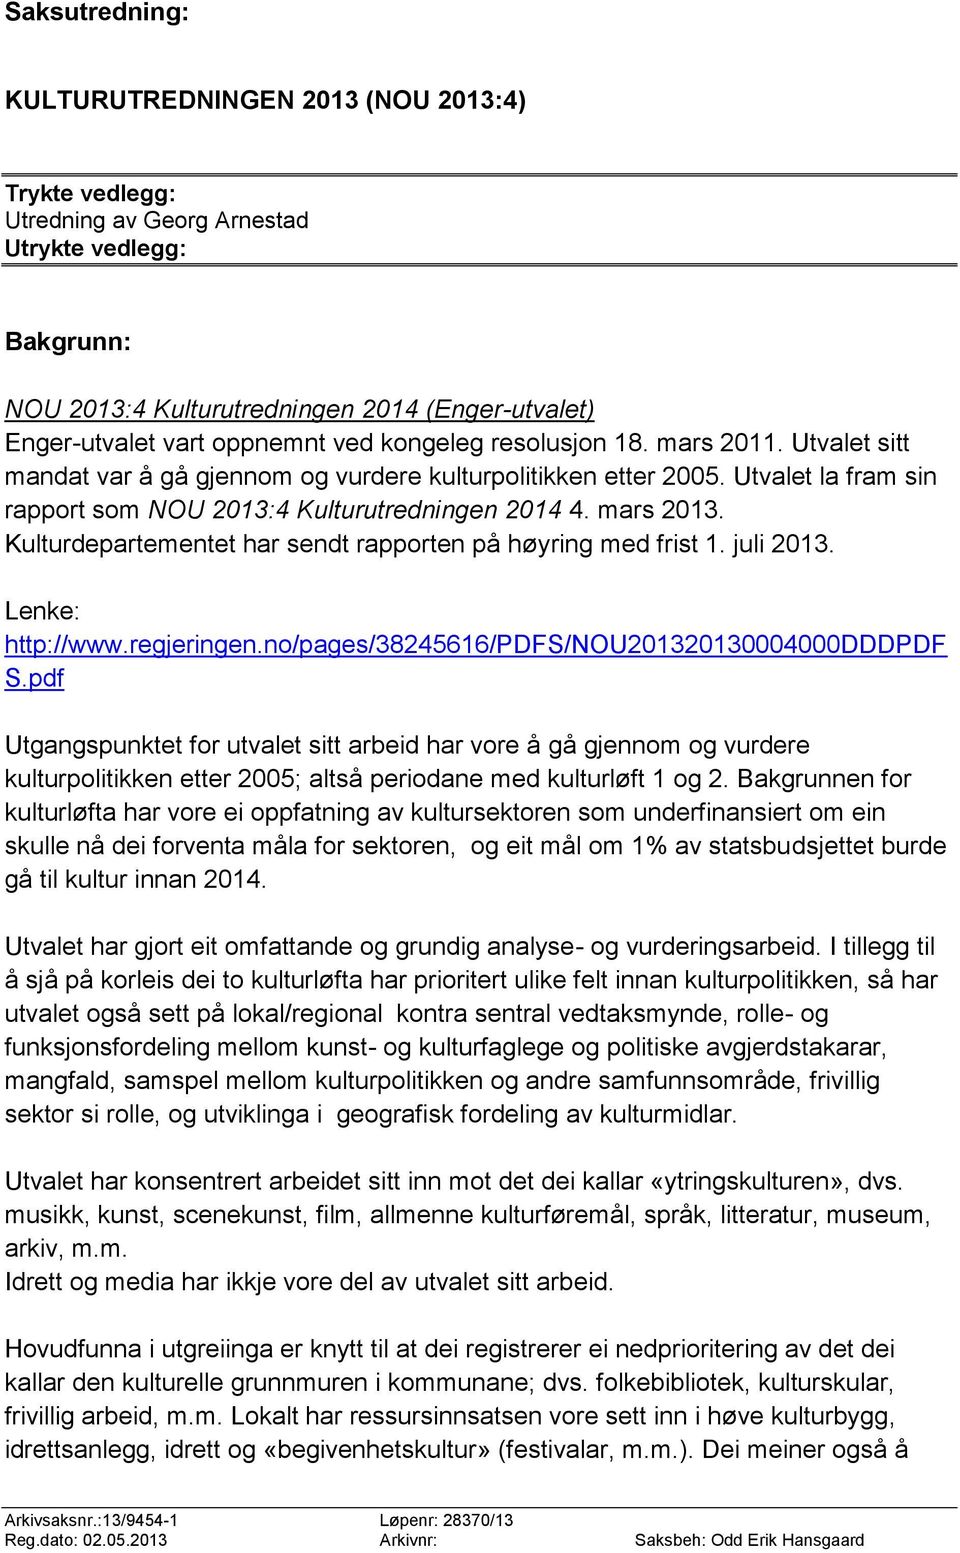 Kulturdepartementet har sendt rapporten på høyring med frist 1. juli 2013. Lenke: http://www.regjeringen.no/pages/38245616/pdfs/nou201320130004000dddpdf S.